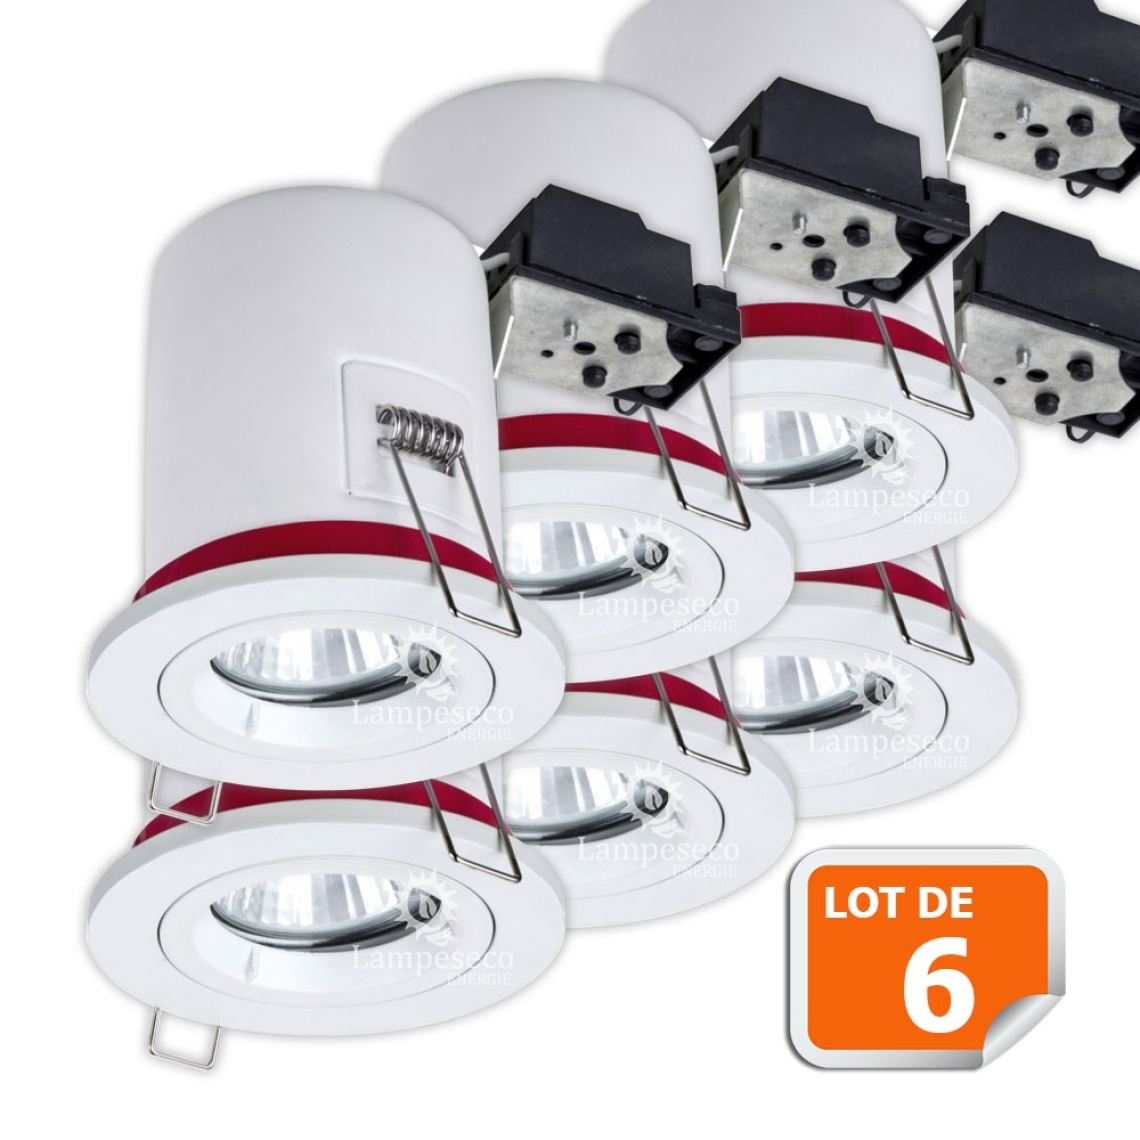 Lampesecoenergie - Lot de 6 Support de spot BBC Orientable diametre 100mm avec douille GU10 ref. 802 - Moulures et goulottes